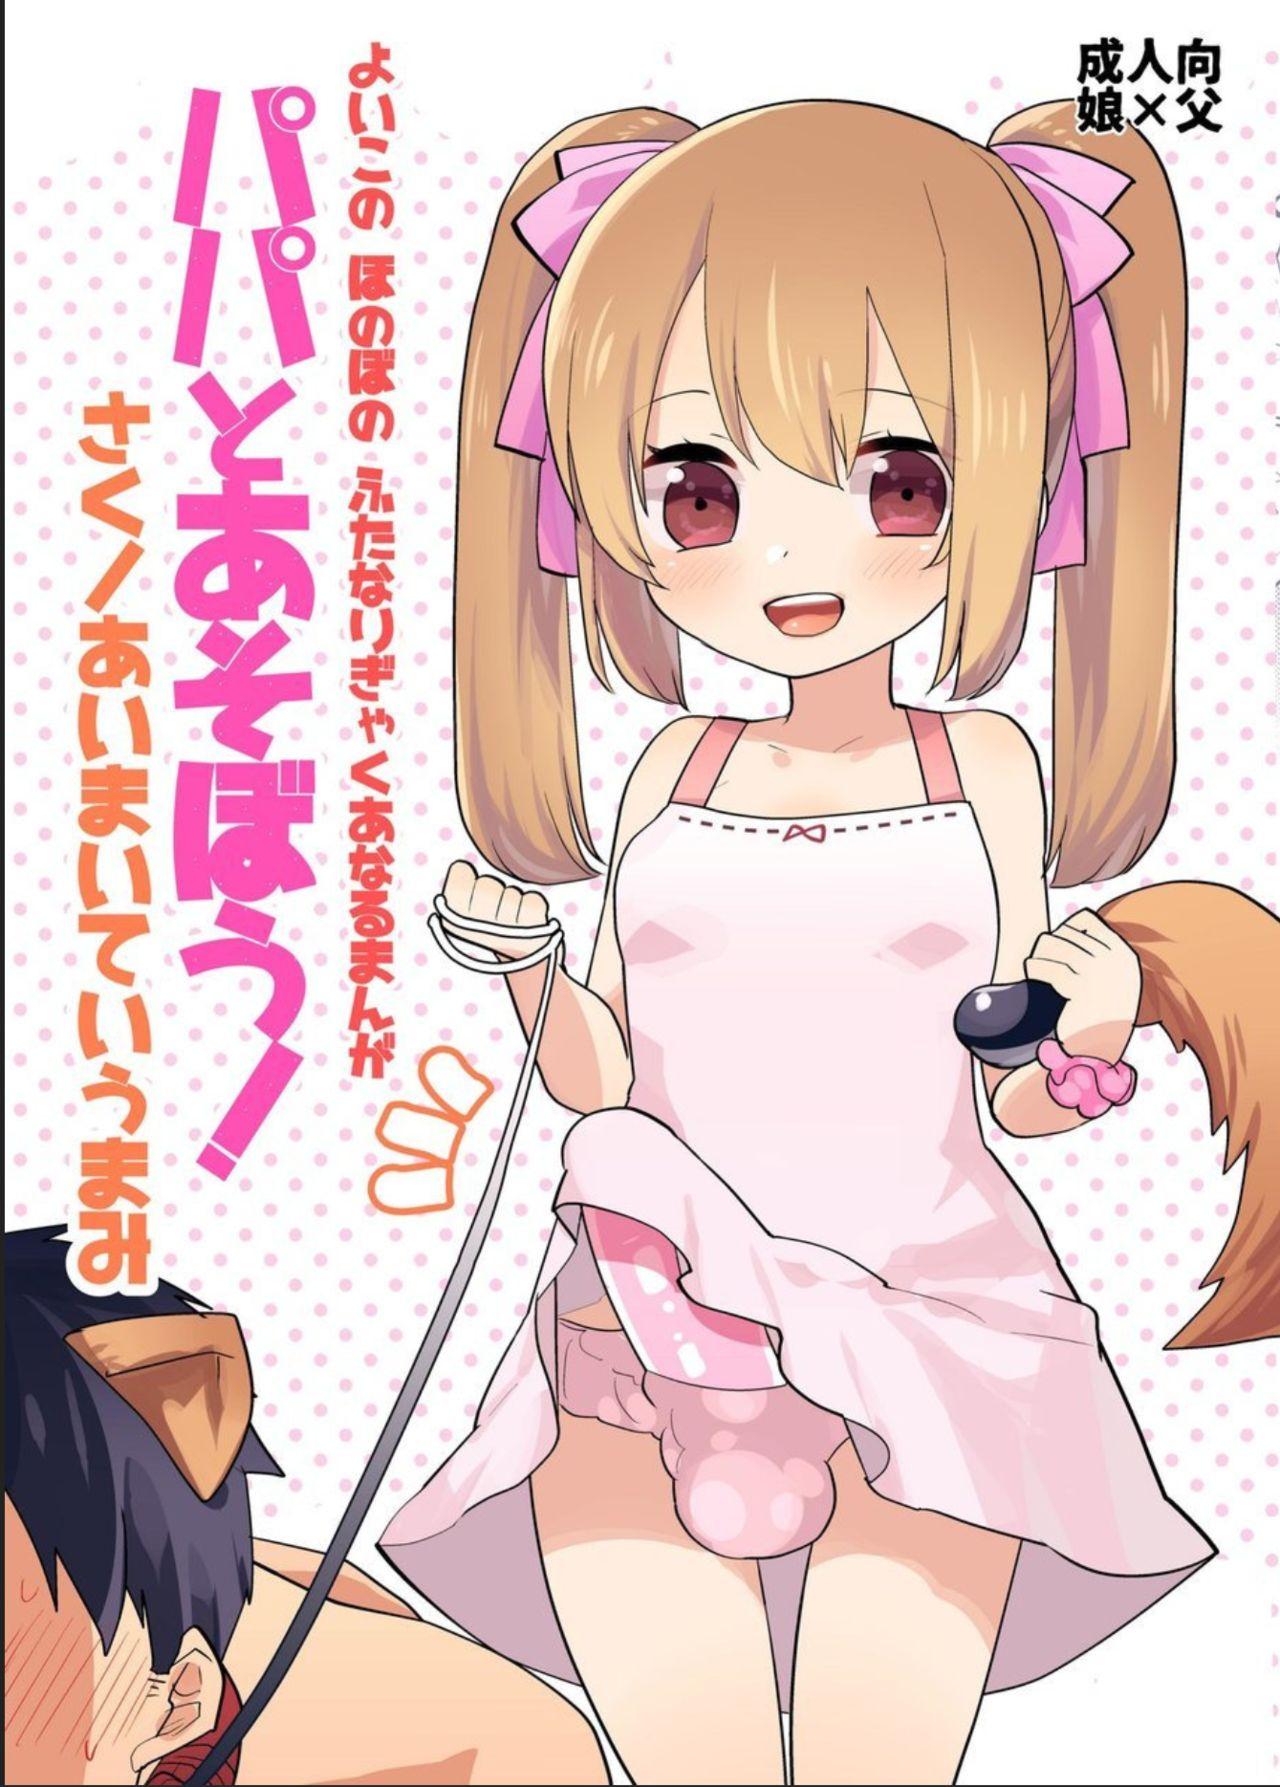 Yoiko no Futanari Gyaku Anal Manga "Papa to Asobou!" | Futanari Anal Manga for Good Children: "Play with Daddy!" 0